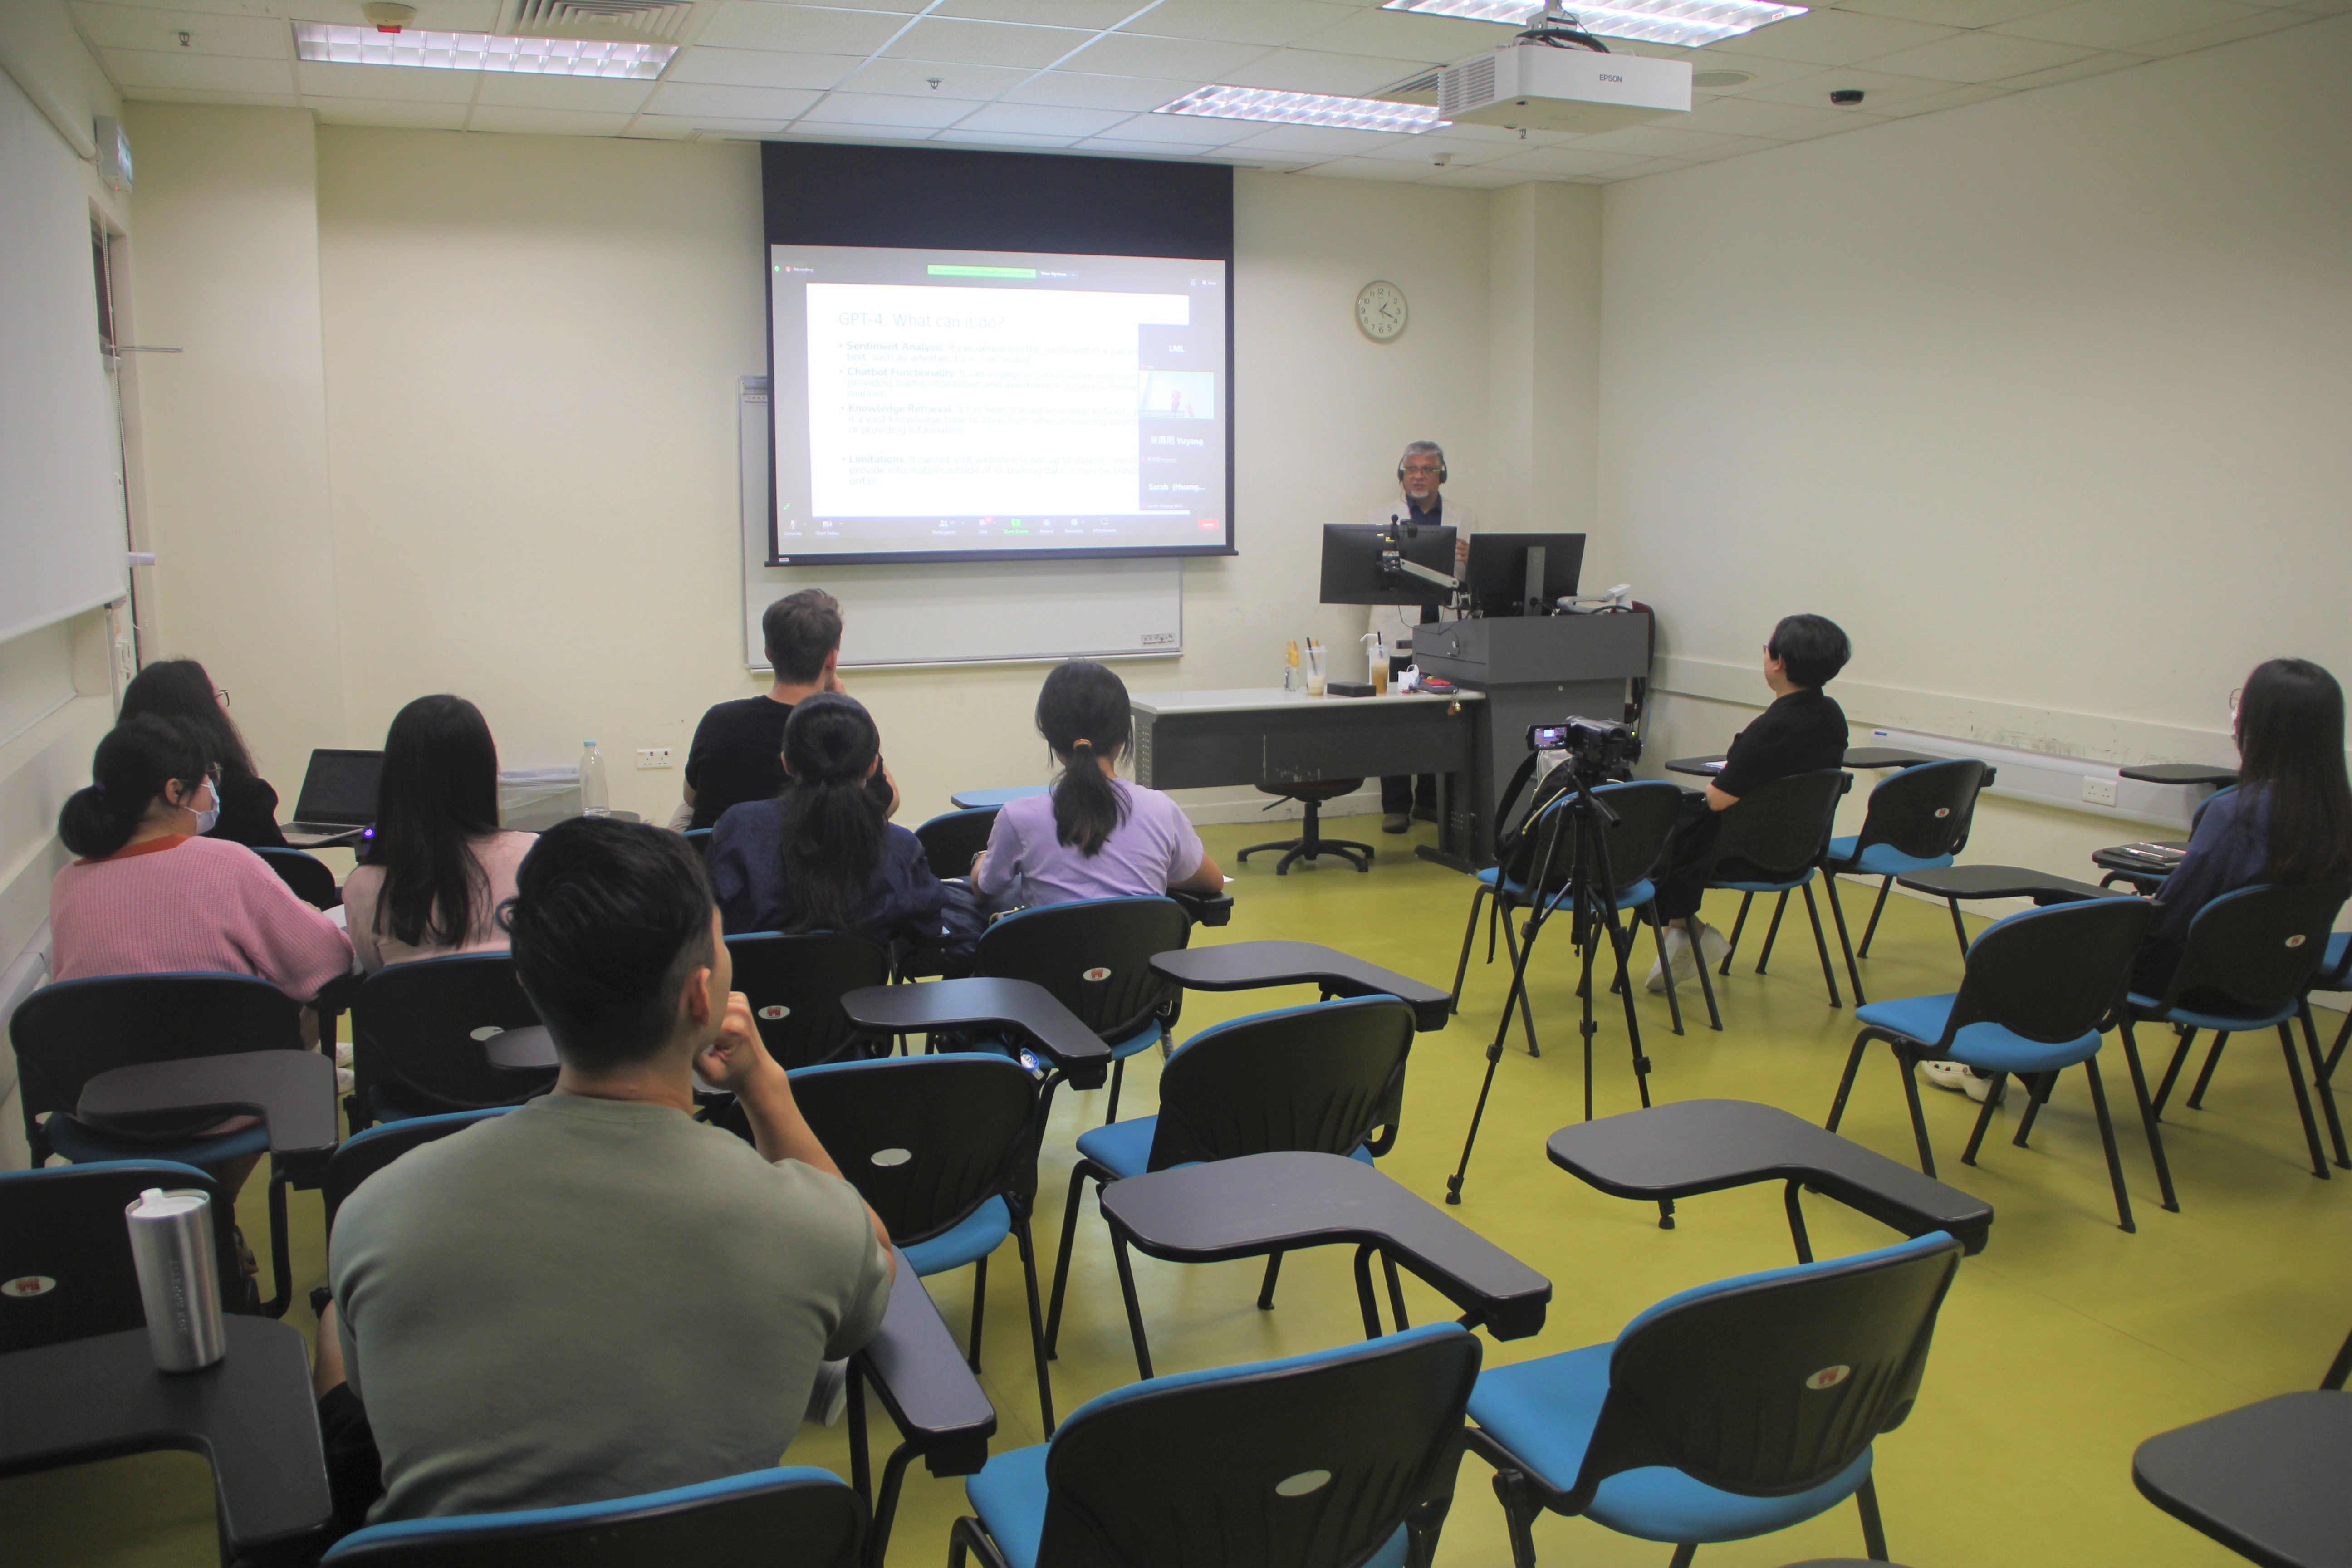 Prof Kunnan presenting during the seminar